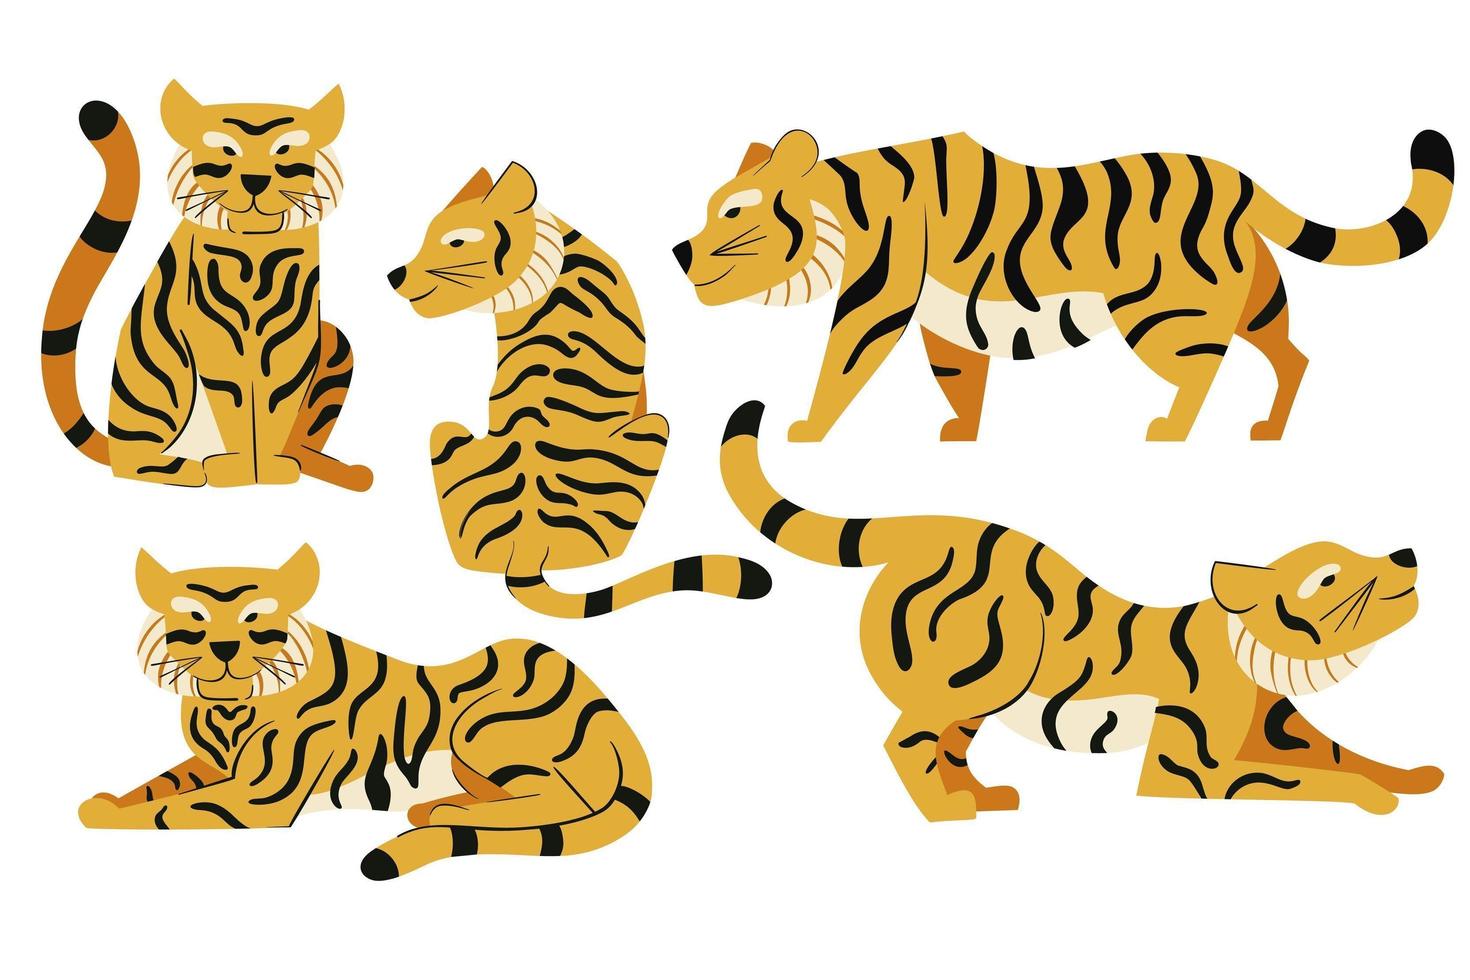 conjunto de tigres vectoriales en diseño plano. Ilustración de gatos salvajes aislado sobre fondo blanco. vector